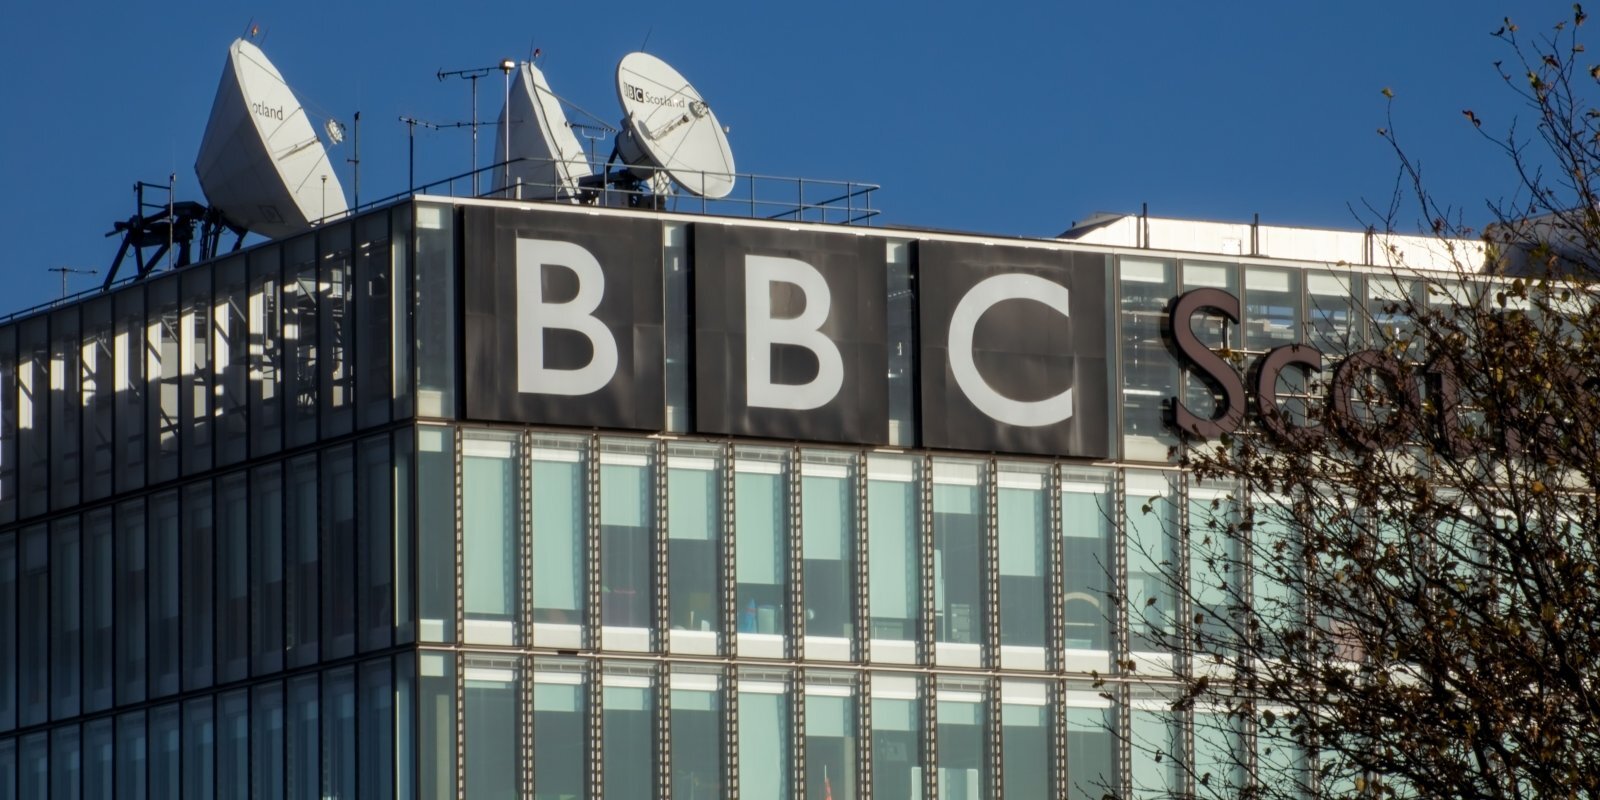 BBC zīmola stāsts: radio, kas iepazīstināja Padomju Savienību ar rokmūziku